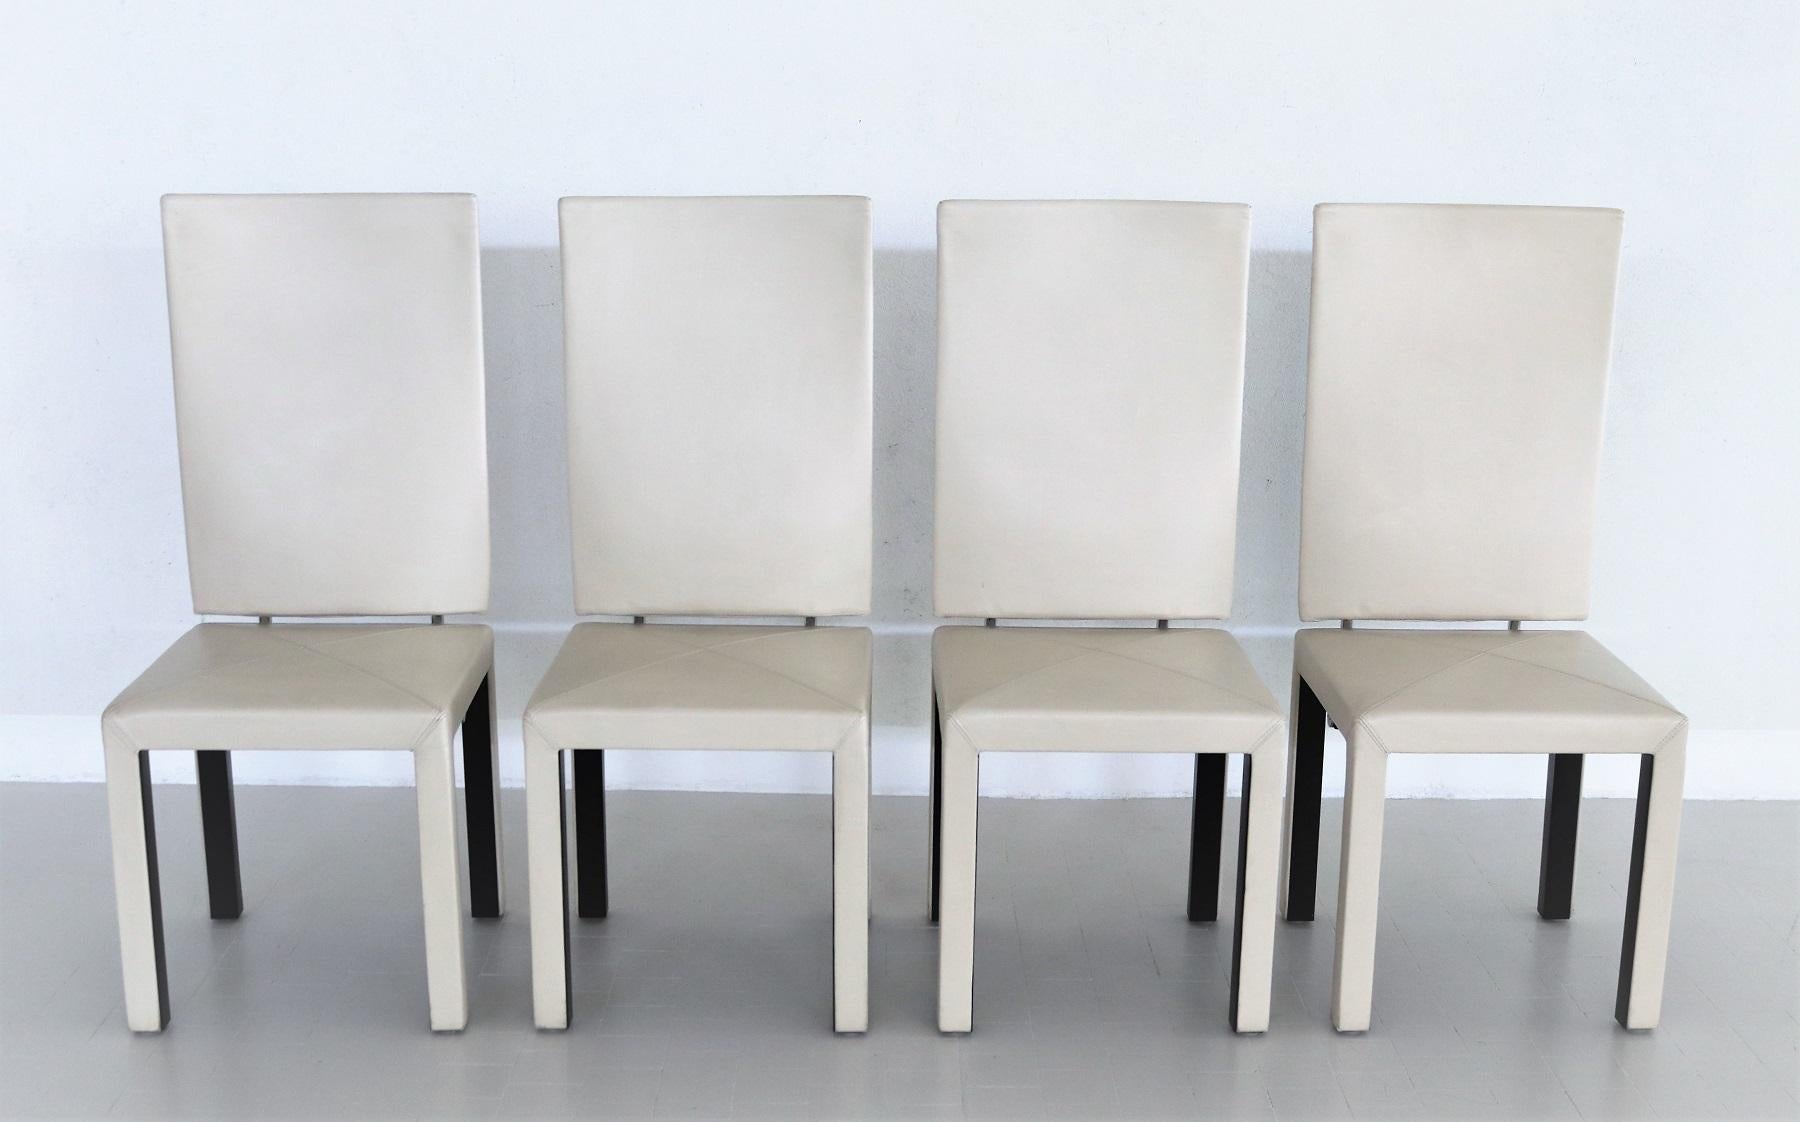 Ensemble de quatre chaises de salle à manger du designer Paolo Piva, fabriquées par B&B Italia en Italie dans les années 1980.
Les chaises ont un dossier haut, qui est relié au siège par une construction métallique spéciale. Cette construction